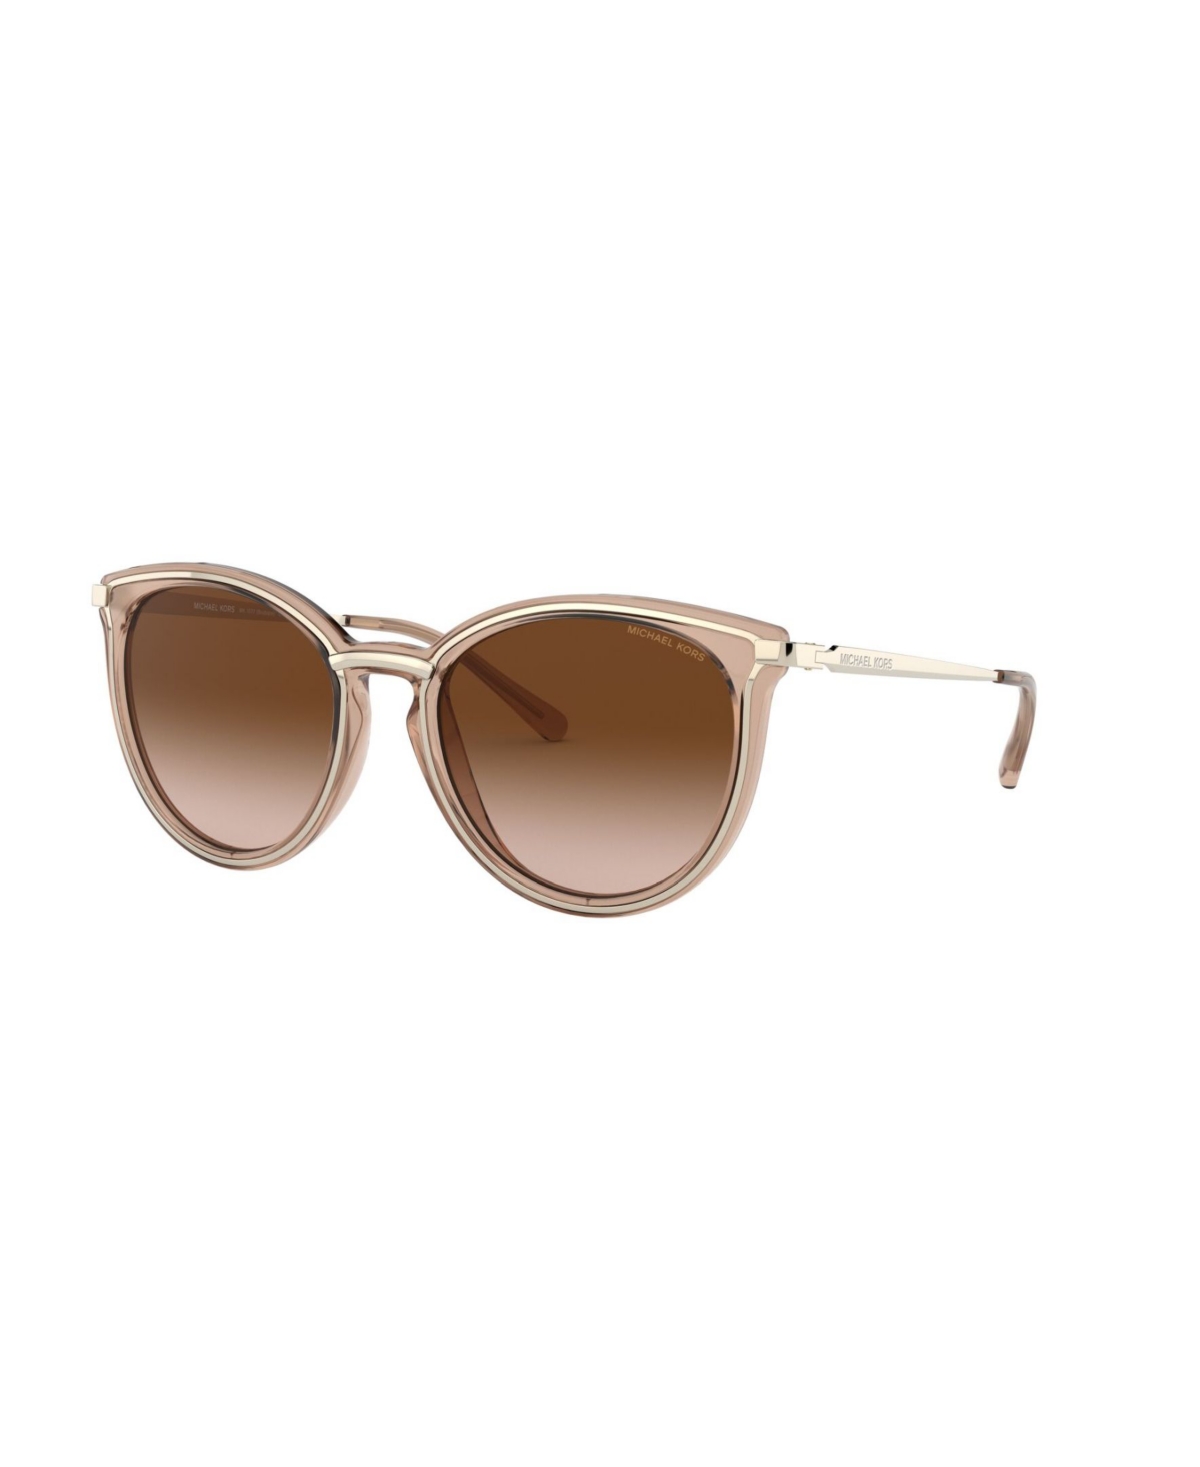 Michael Kors Sunglasses, 0mk1077 In Gold Brown